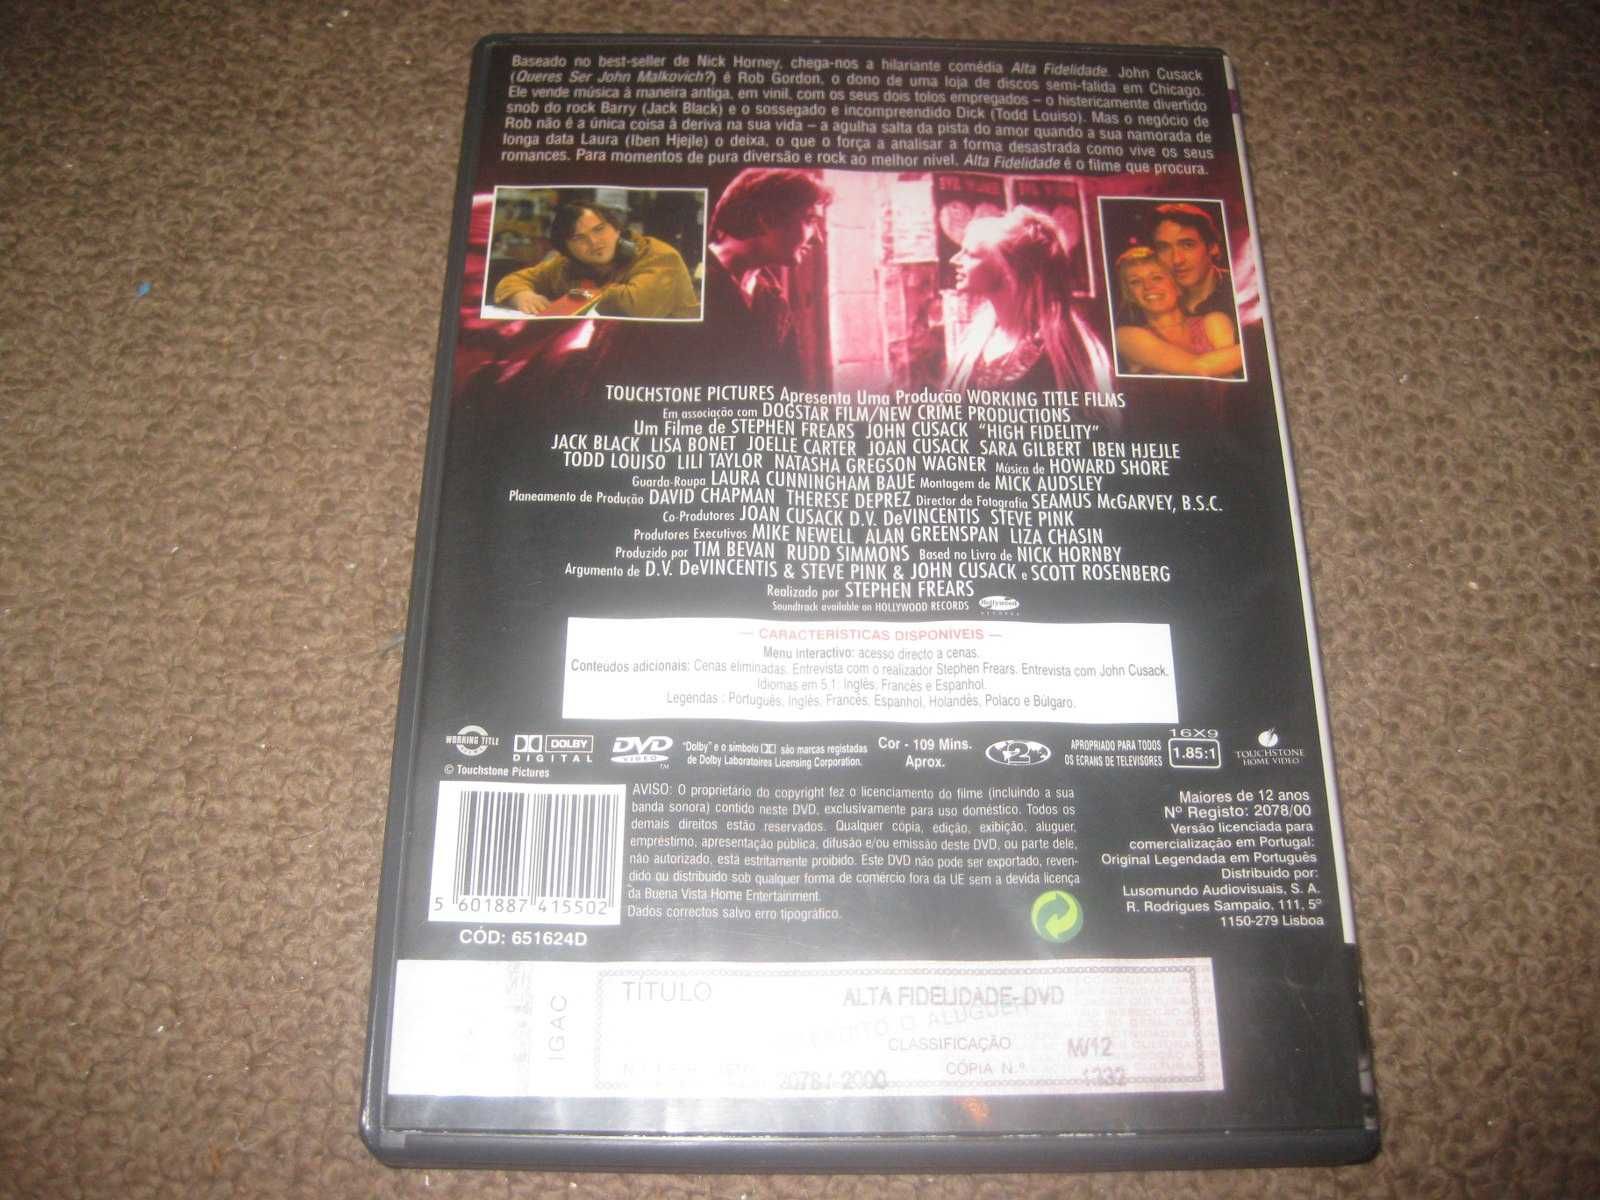 DVD "Alta Fidelidade" com John Cusack